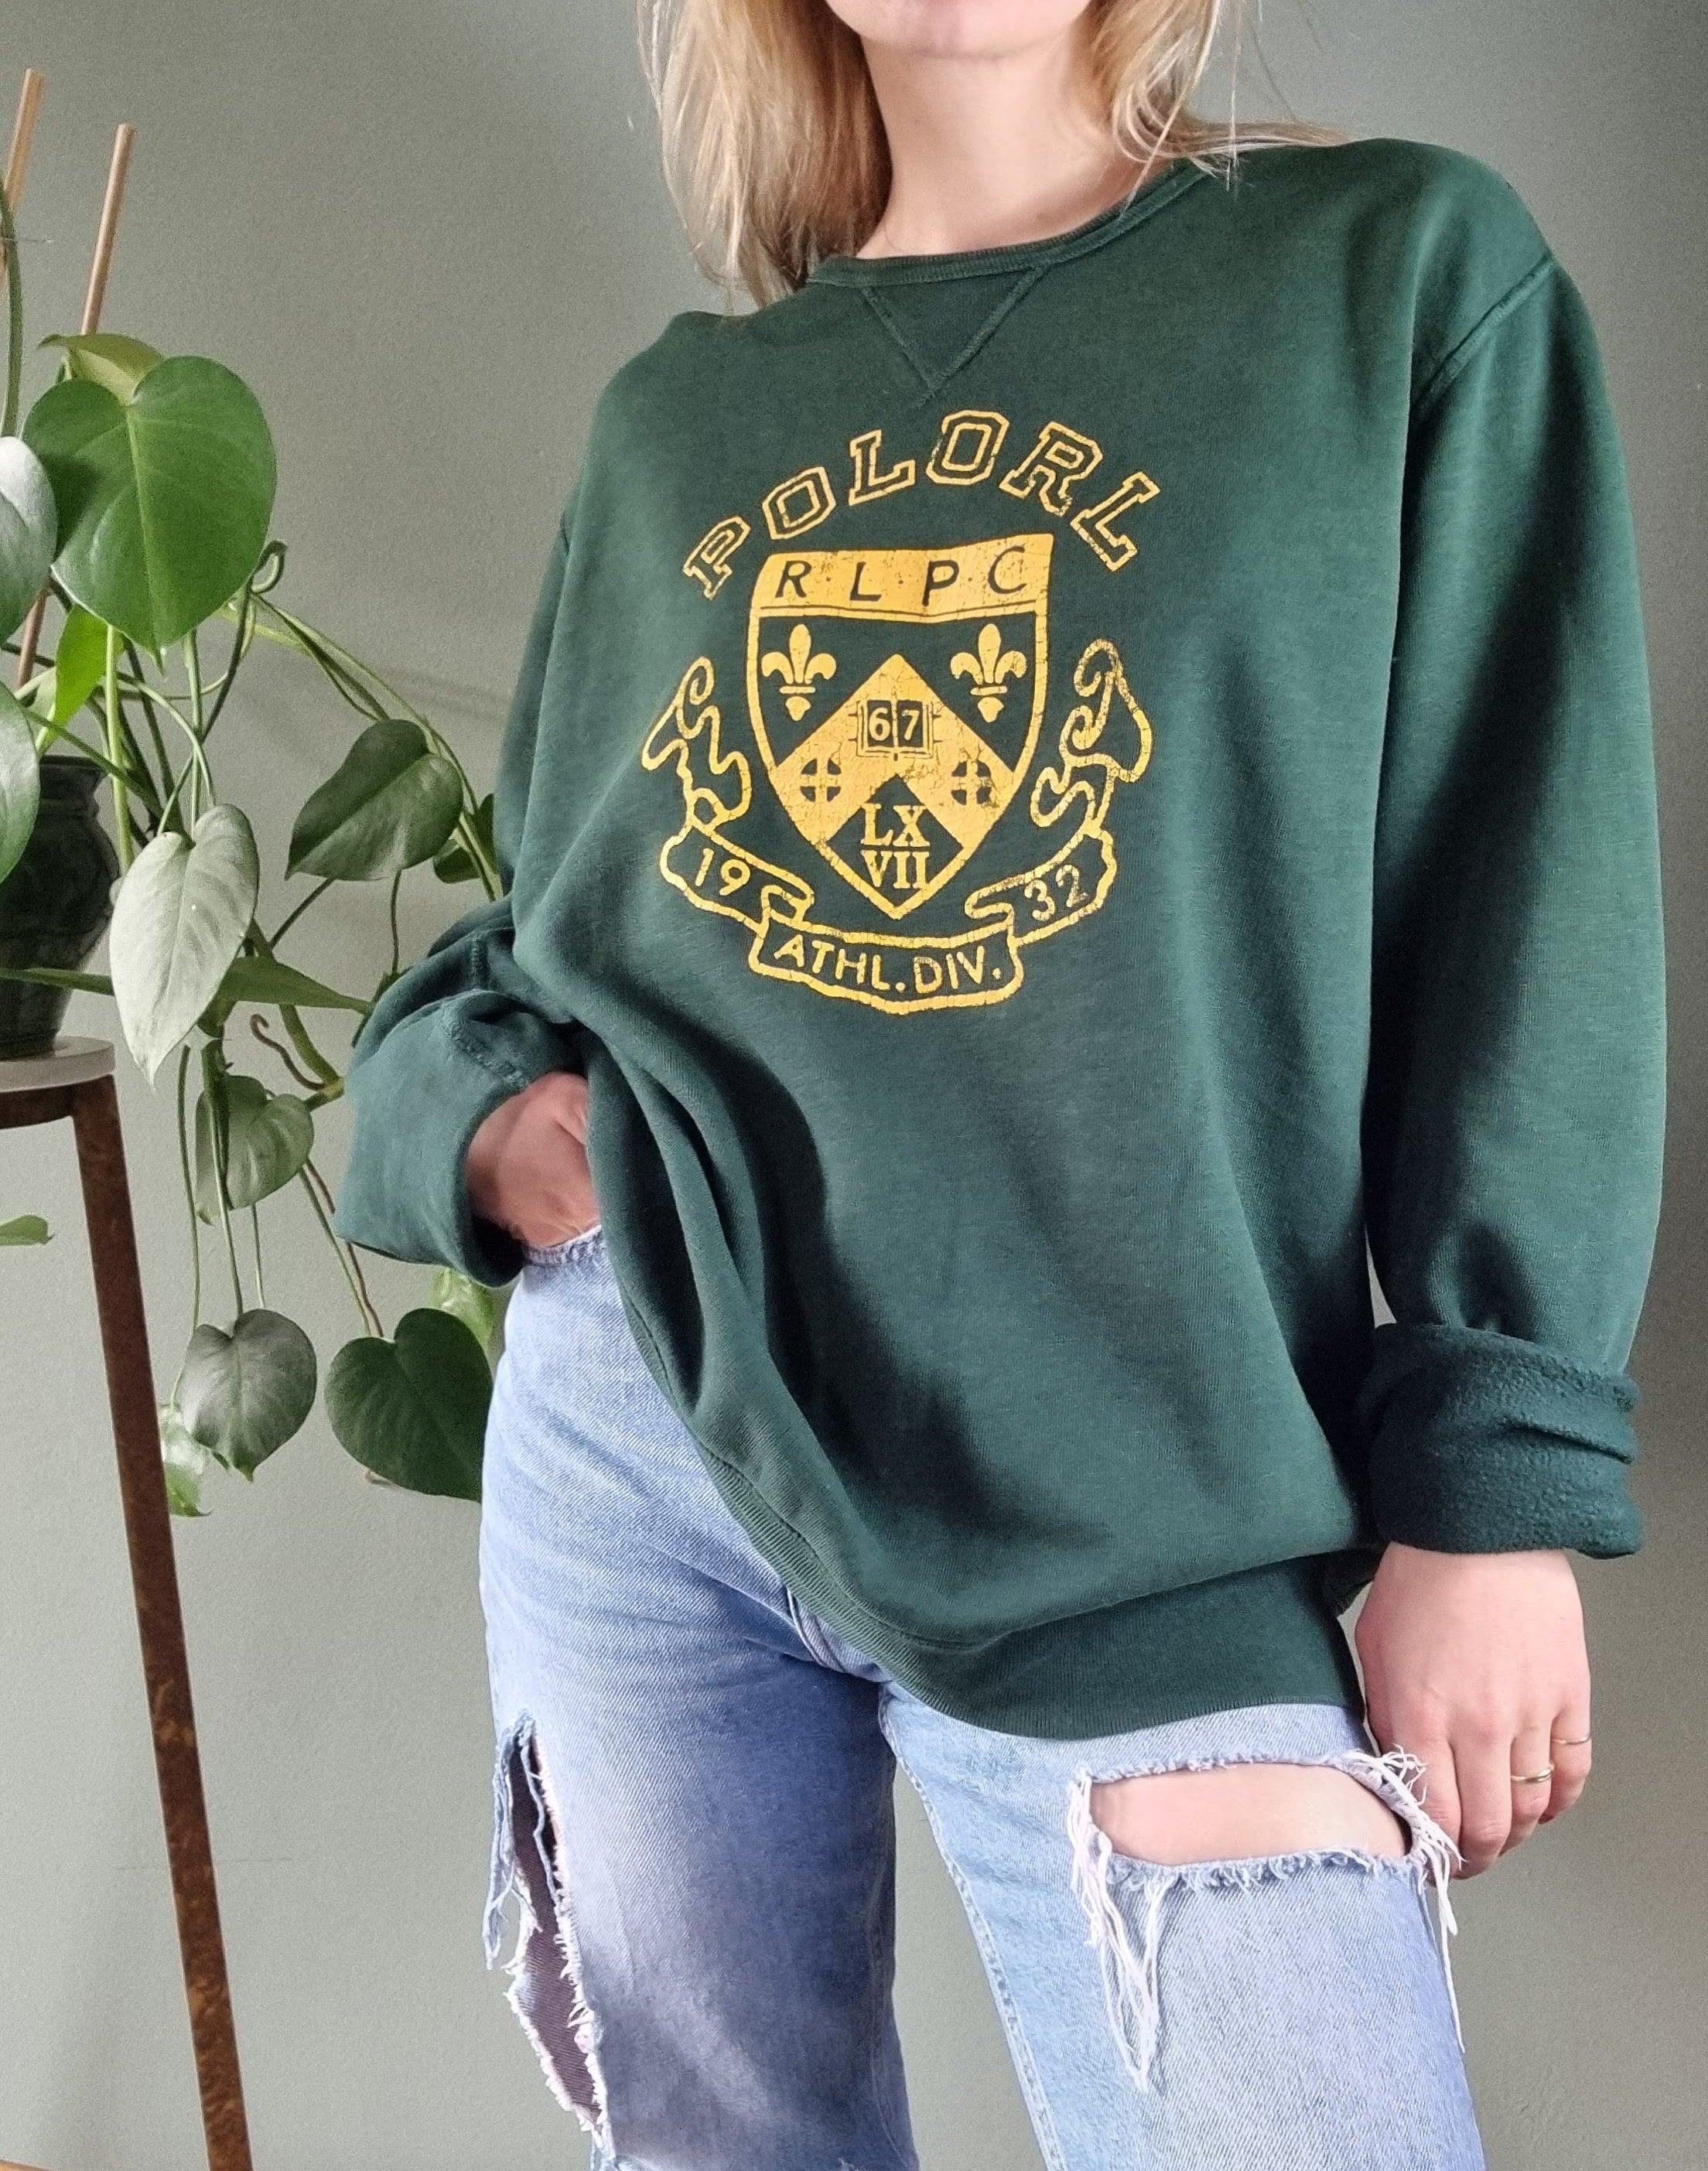 Ralph Lauren sweater - XL